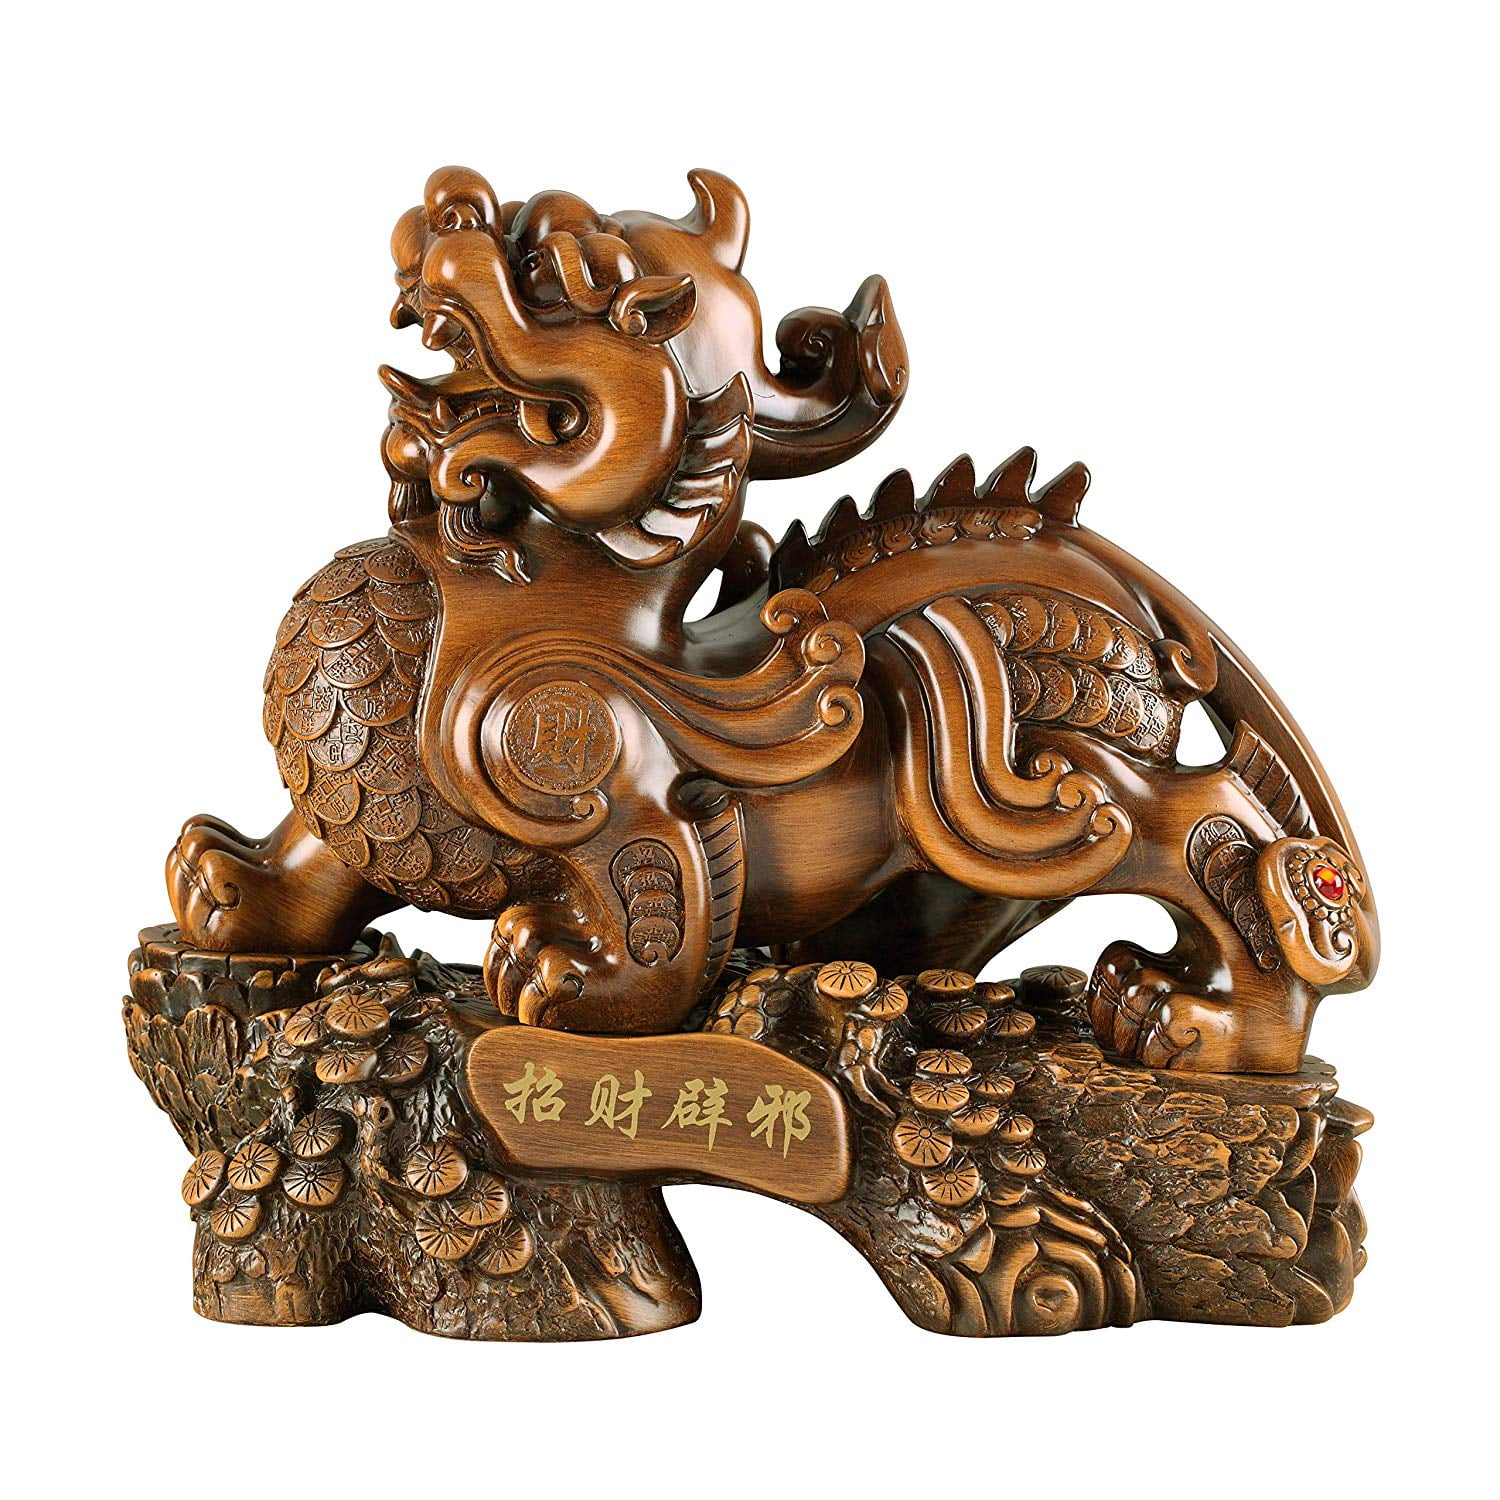 China hand-made antique bronze Pi xiu censer Lucky statue 